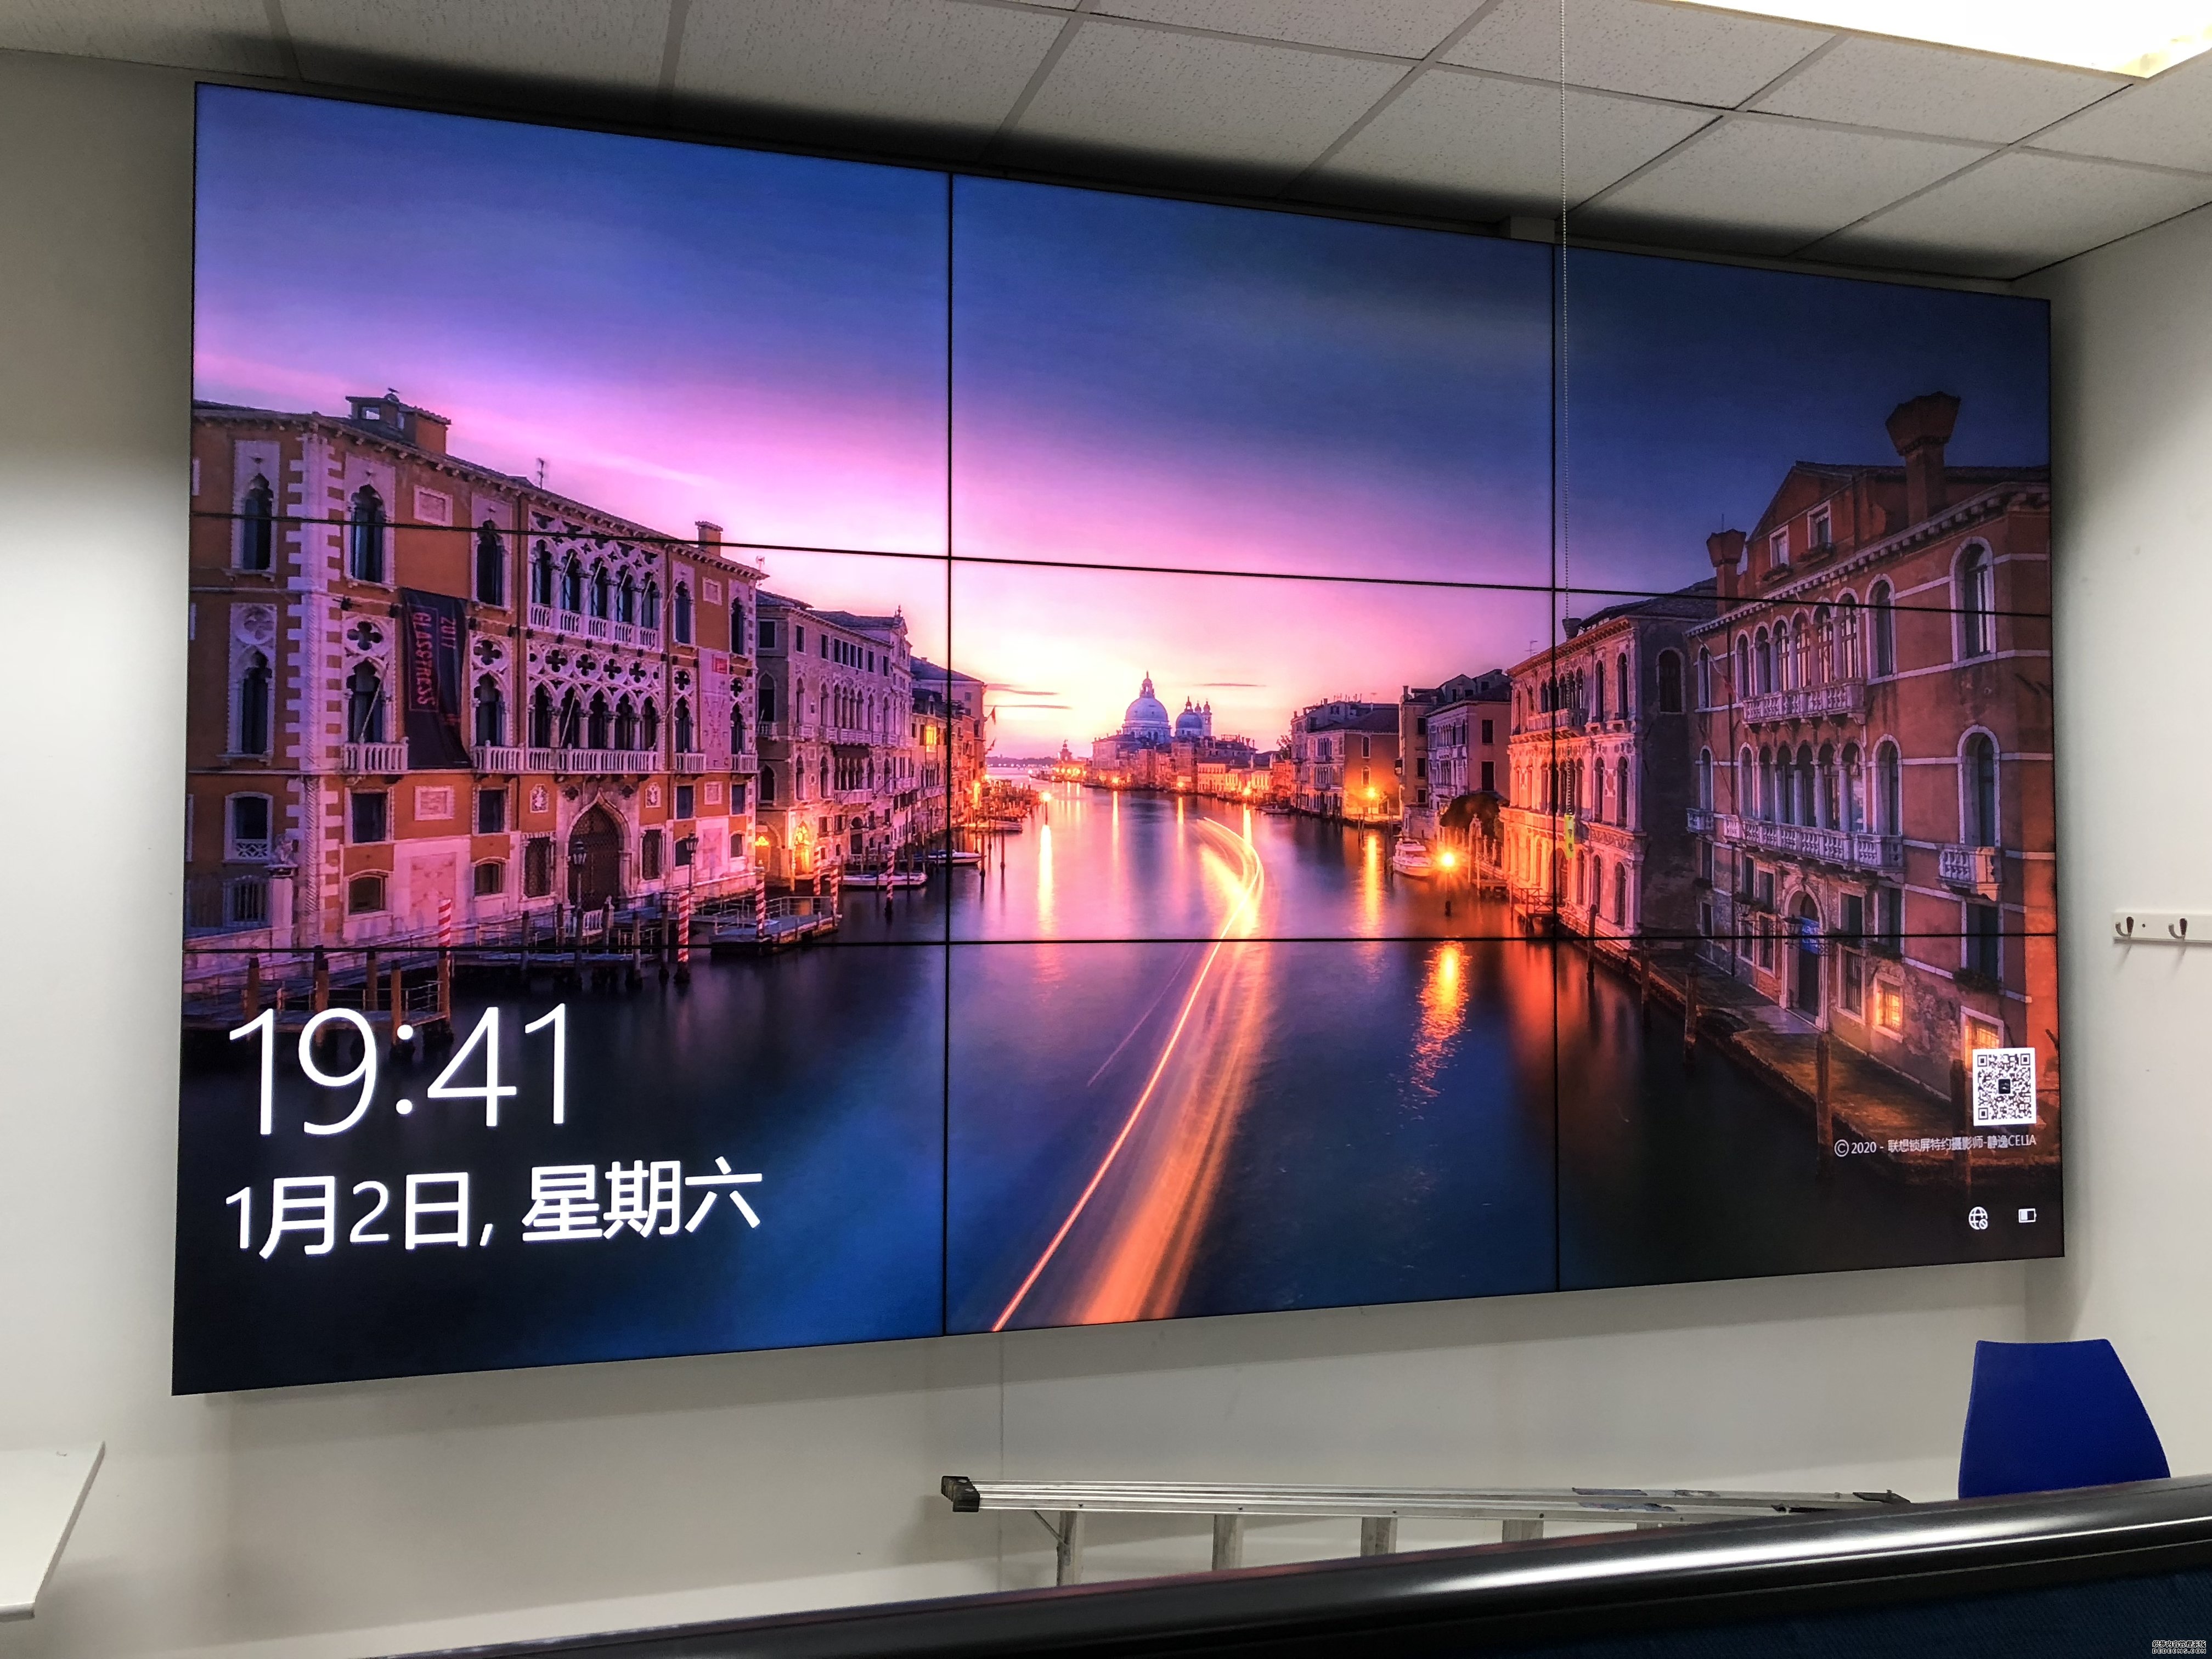  上海大金空调生产中心拼接屏项目案例 